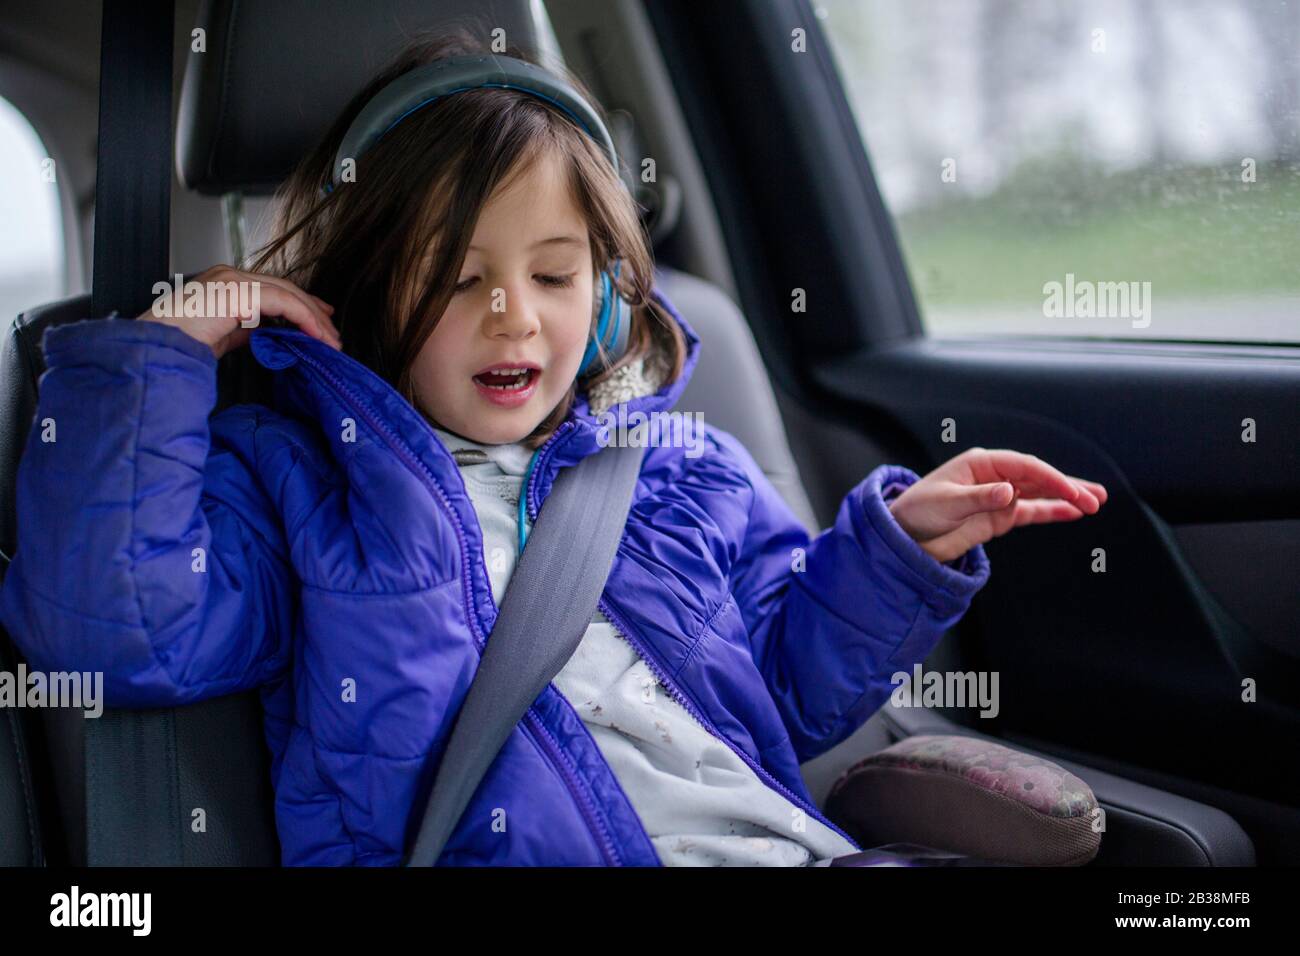 Ein kleines Mädchen hört auf einer Autofahrt Musik über Kopfhörer Stockfoto